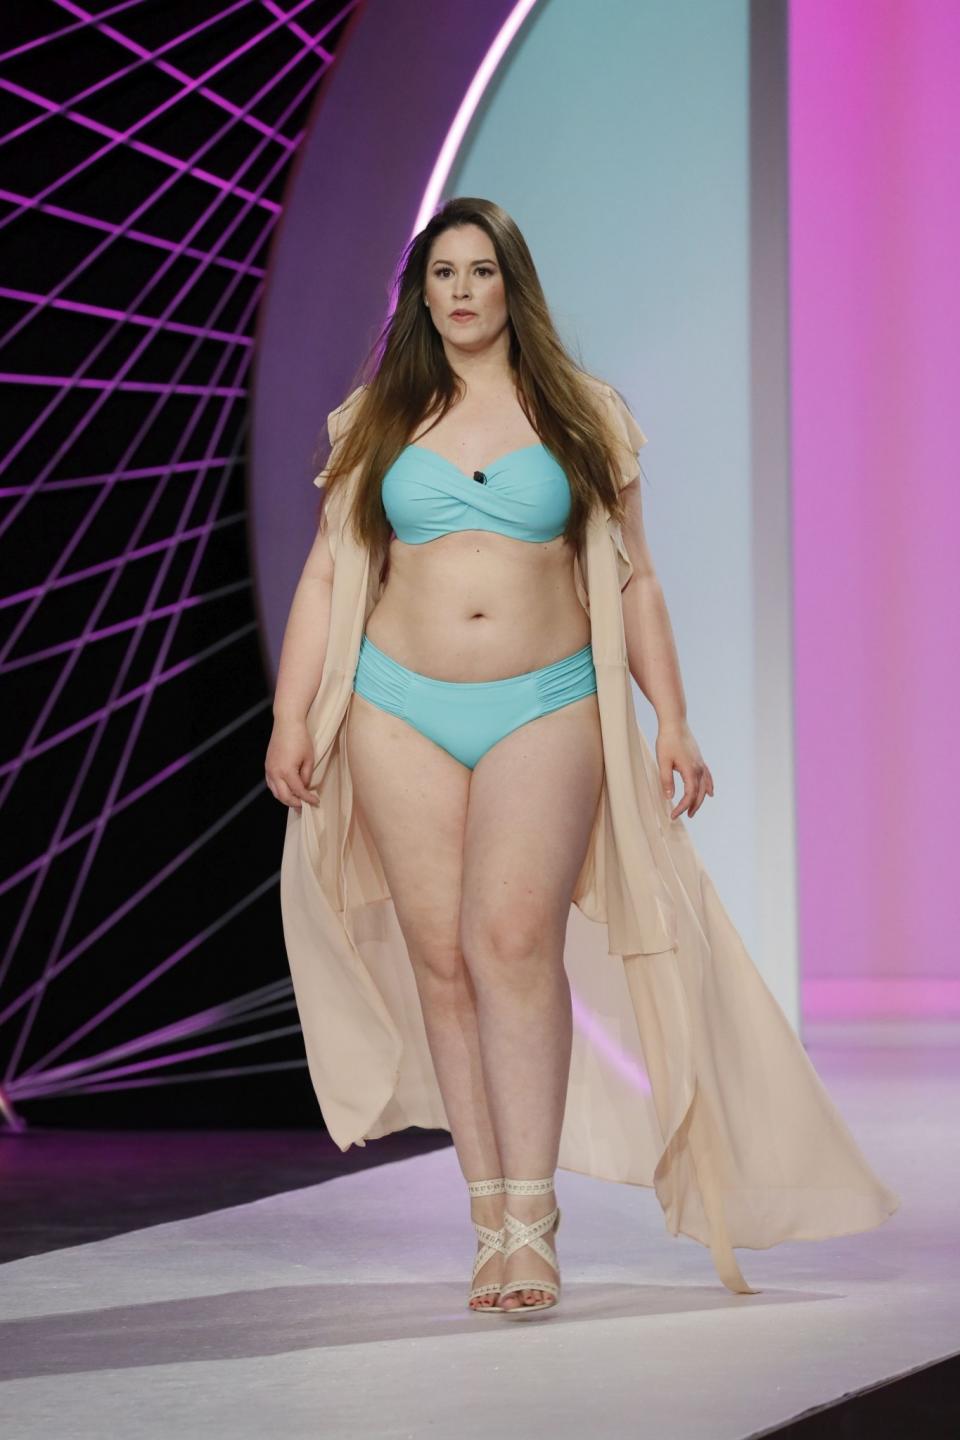 Curvy Supermodel – Alle Kandidatinnen im Überblick